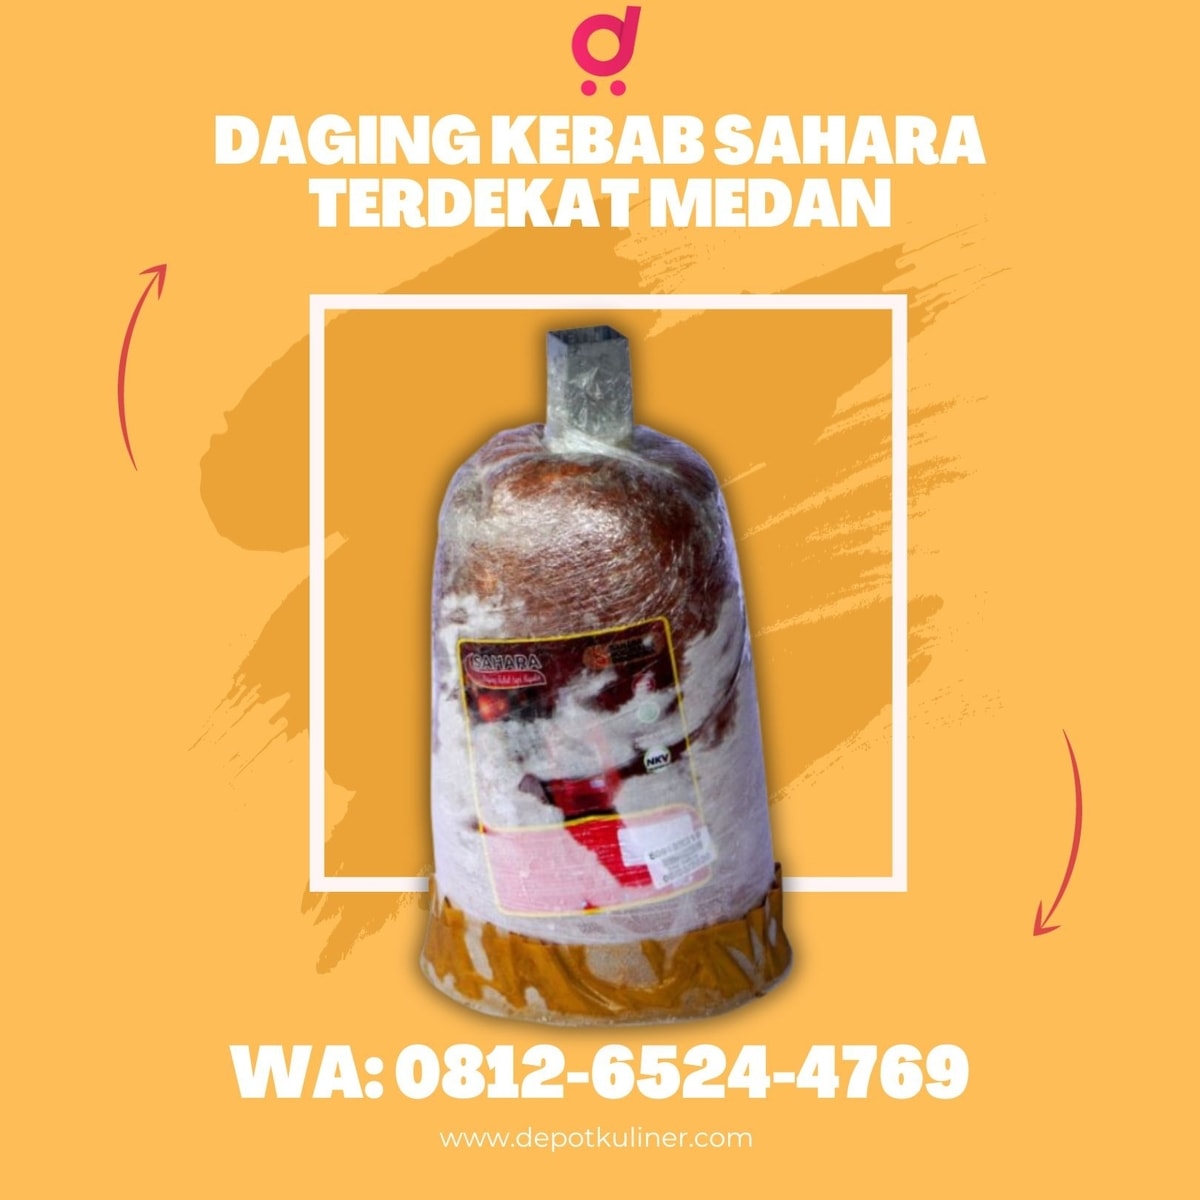 BANTING HARGA, Call 0812-6524-4769, Daging Kebab Sahara Terdekat Medan